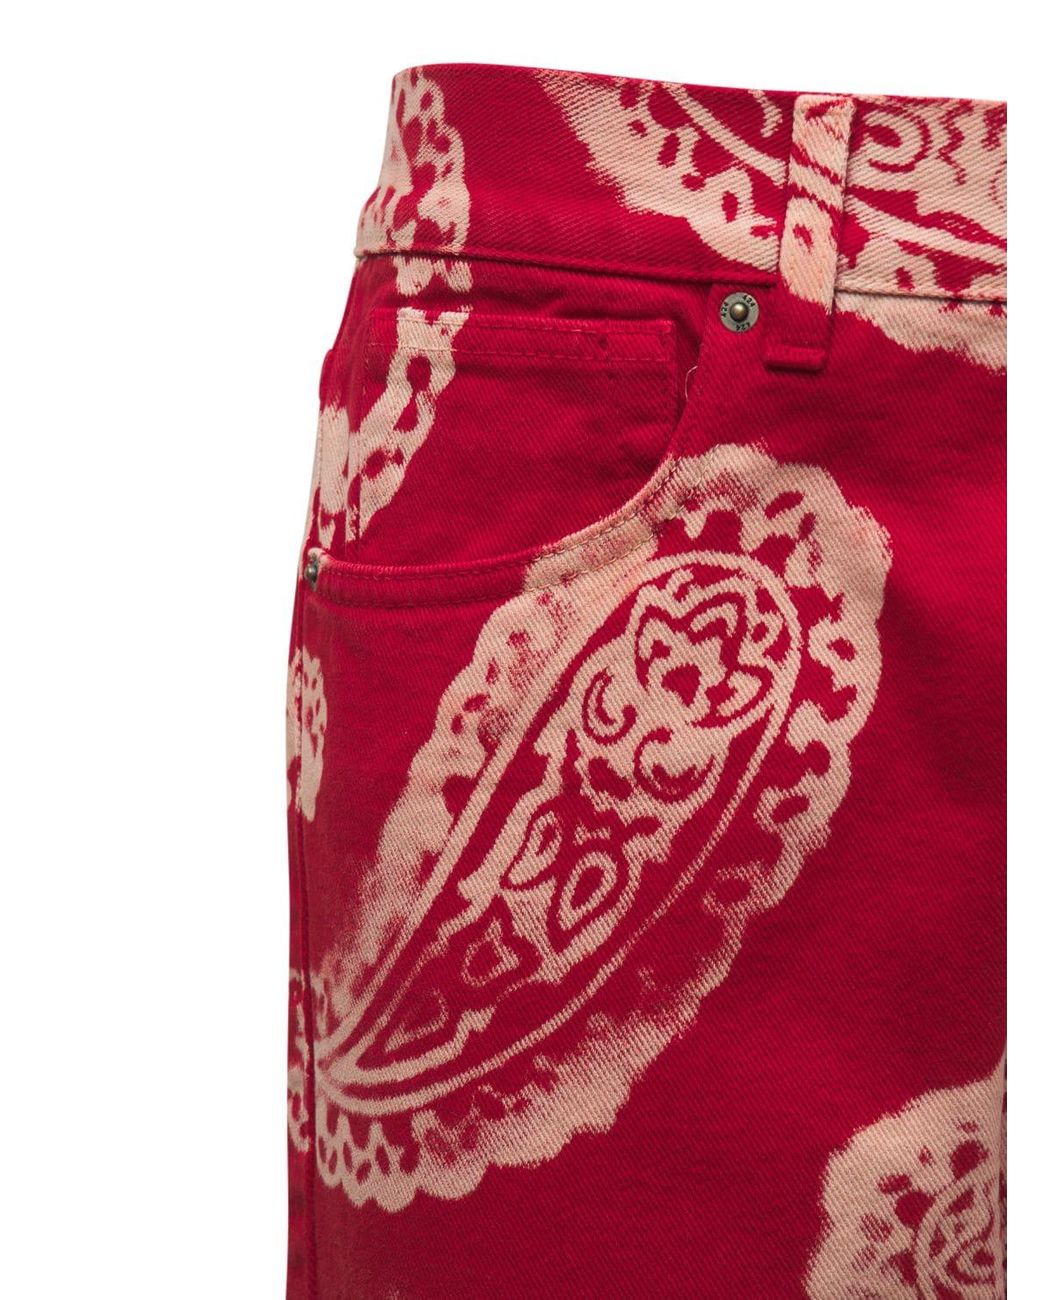 Hfyihgf Men's Skinny Jeans Fashion Casual Color Block Patchwork Slim Fit Cotton  Denim Pencil Pants(Red,S) - Walmart.com